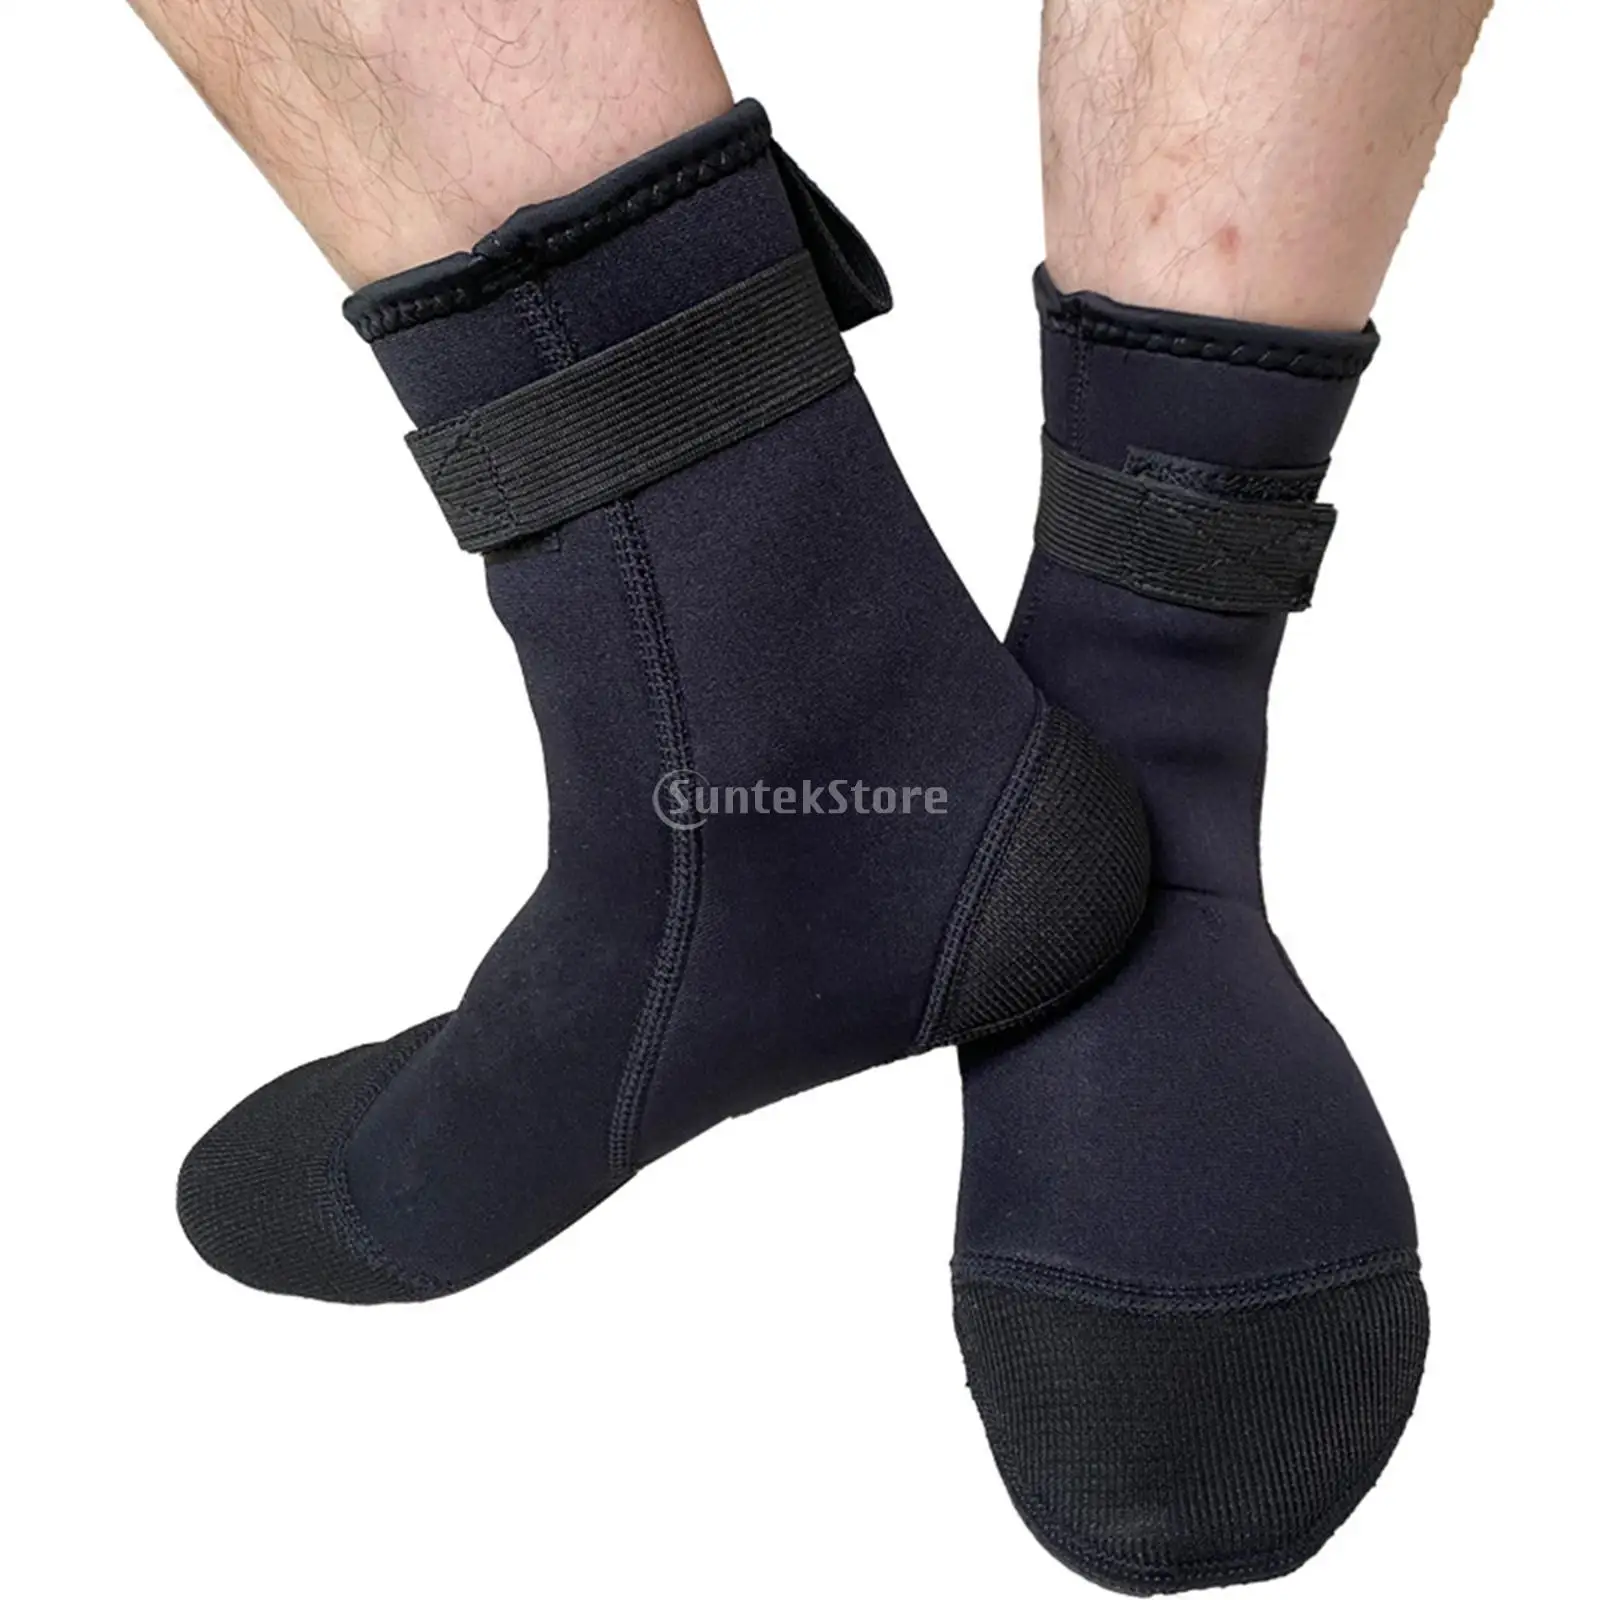 3mm Neopren Tauchen Socken Anti Slip Neoprenanzug Socken Strand Stiefel für Schnorcheln Outdoor Segeln Strand Volleyball Wasser Sport